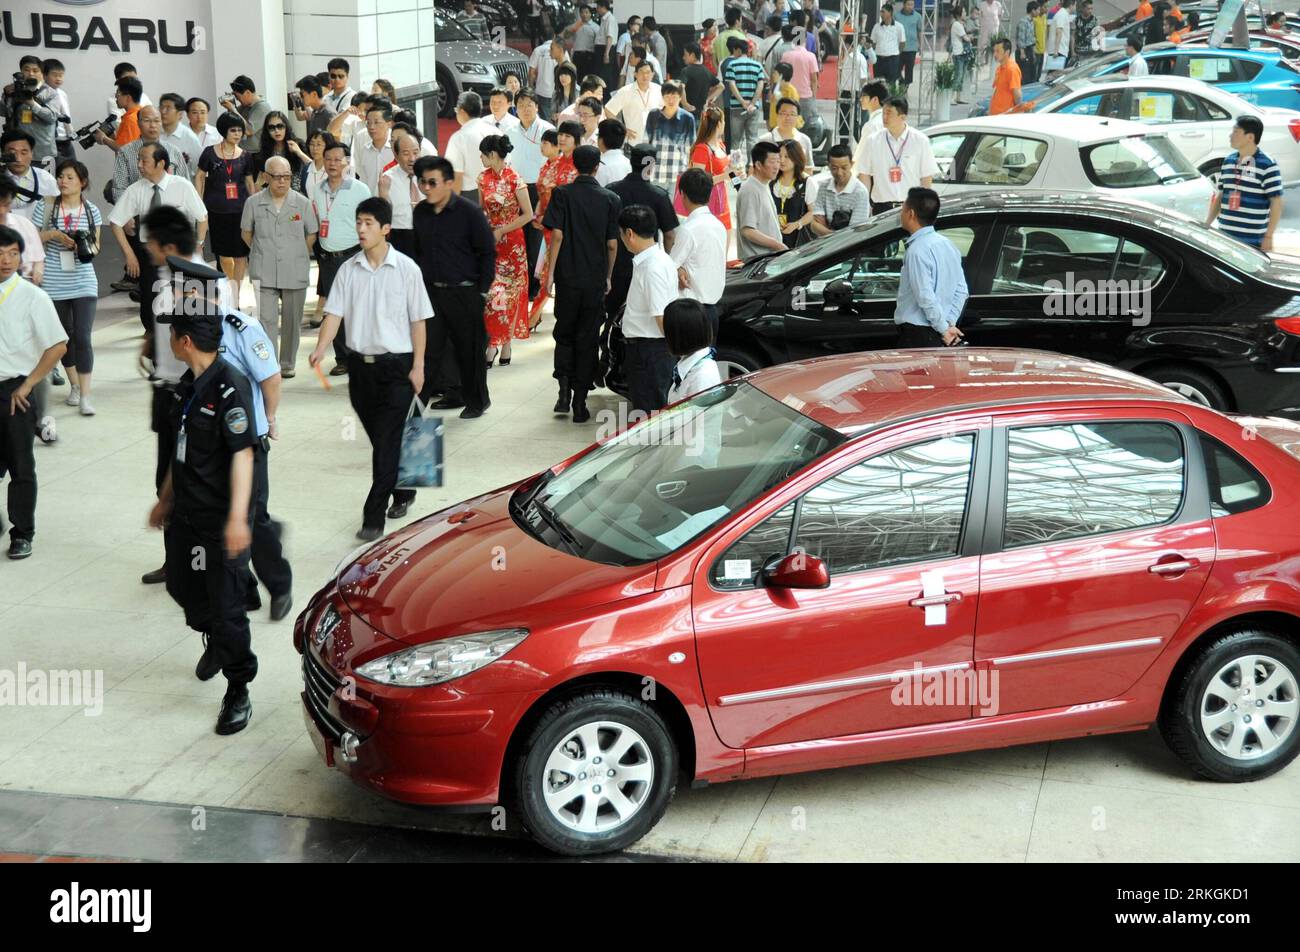 Bildnummer : 55602947 Datum : 19.07.2011 Copyright : imago/Xinhua (110719) -- LIANYUNGANG, 19 juillet 2011 (Xinhua) -- les visiteurs visitent un salon de l'auto dans la ville de Lianyungang, province de Jiangsu dans l'est de la Chine, le 3 juin 2011. La Chine a un total de 217 millions de véhicules automobiles immatriculés à la fin du mois de juin 2011, dont 98,46 millions de voitures et 102 millions de motos, a déclaré mardi le ministère de la sécurité publique sur son site Internet. Le nombre de voitures privées a atteint 72,06 millions, selon le ministère, ce qui représente 73,2 pour cent de la population automobile totale. (Xinhua/Wang Chun) (zy) (ljh) #CHINA-PRIVATE AUTO (CN Banque D'Images